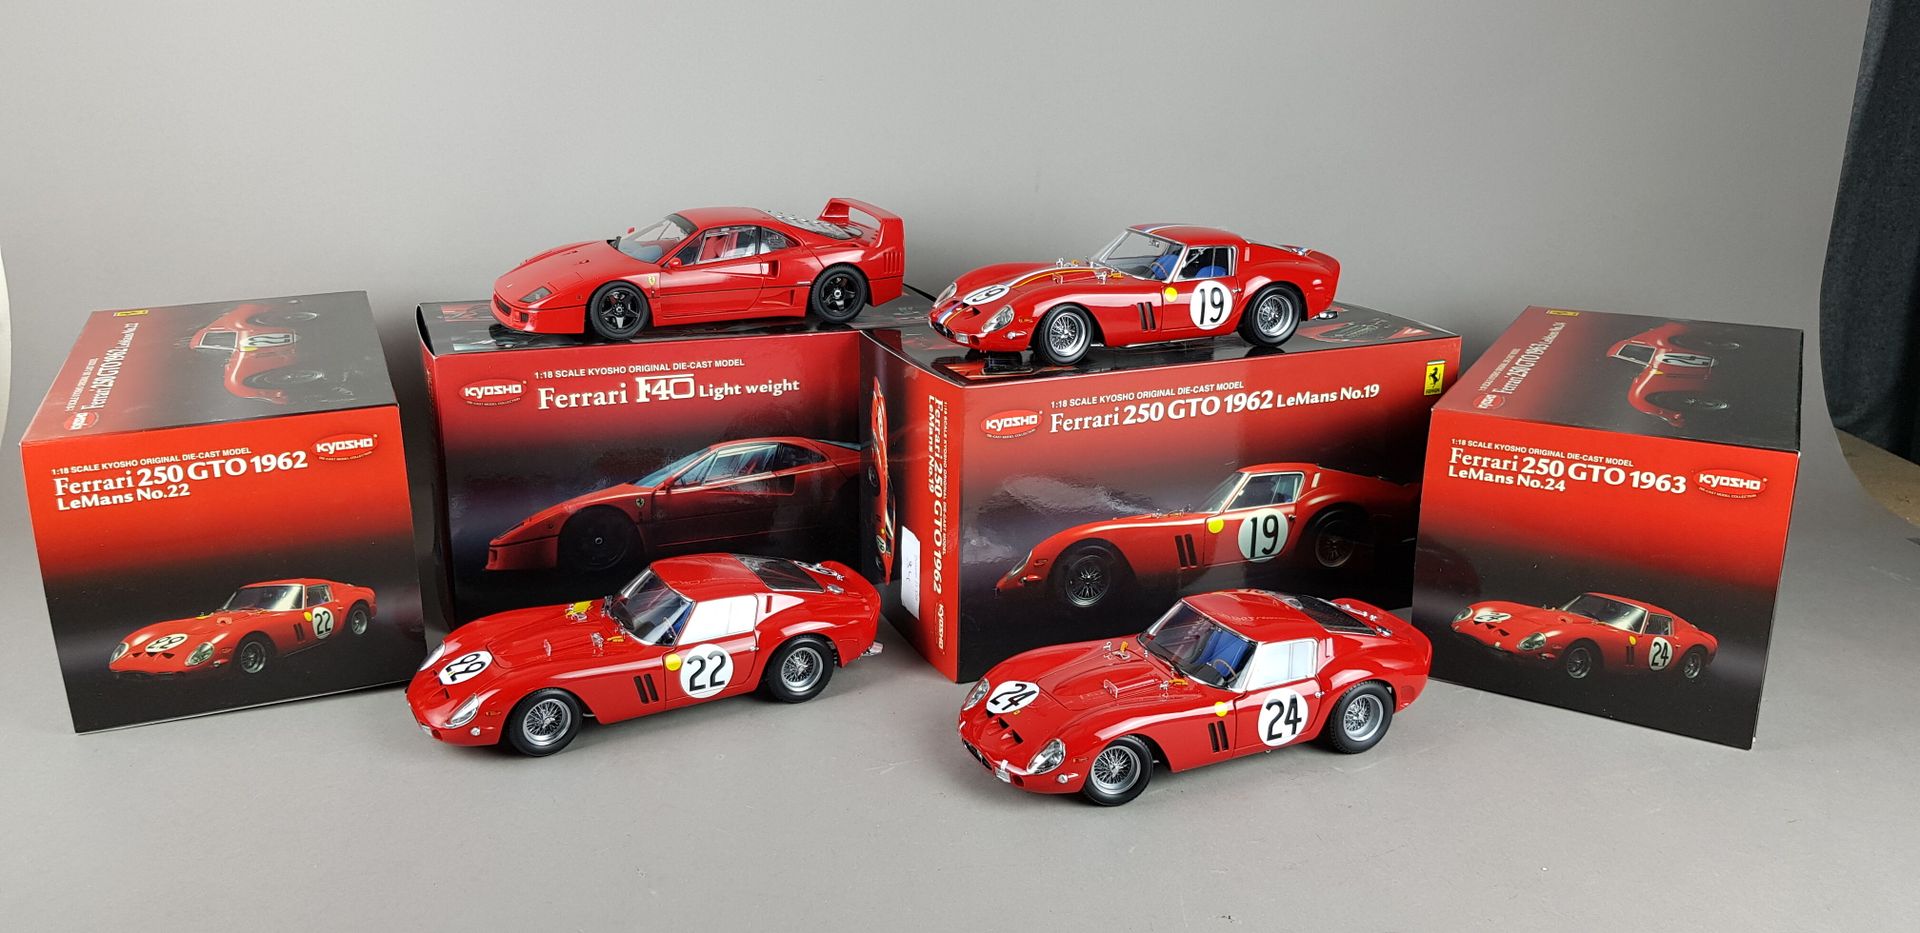 Null KYOSHO - QUATRE Ferrari échelle 1/18 :

1x F40 Light White

1x 250GTO 1962 &hellip;